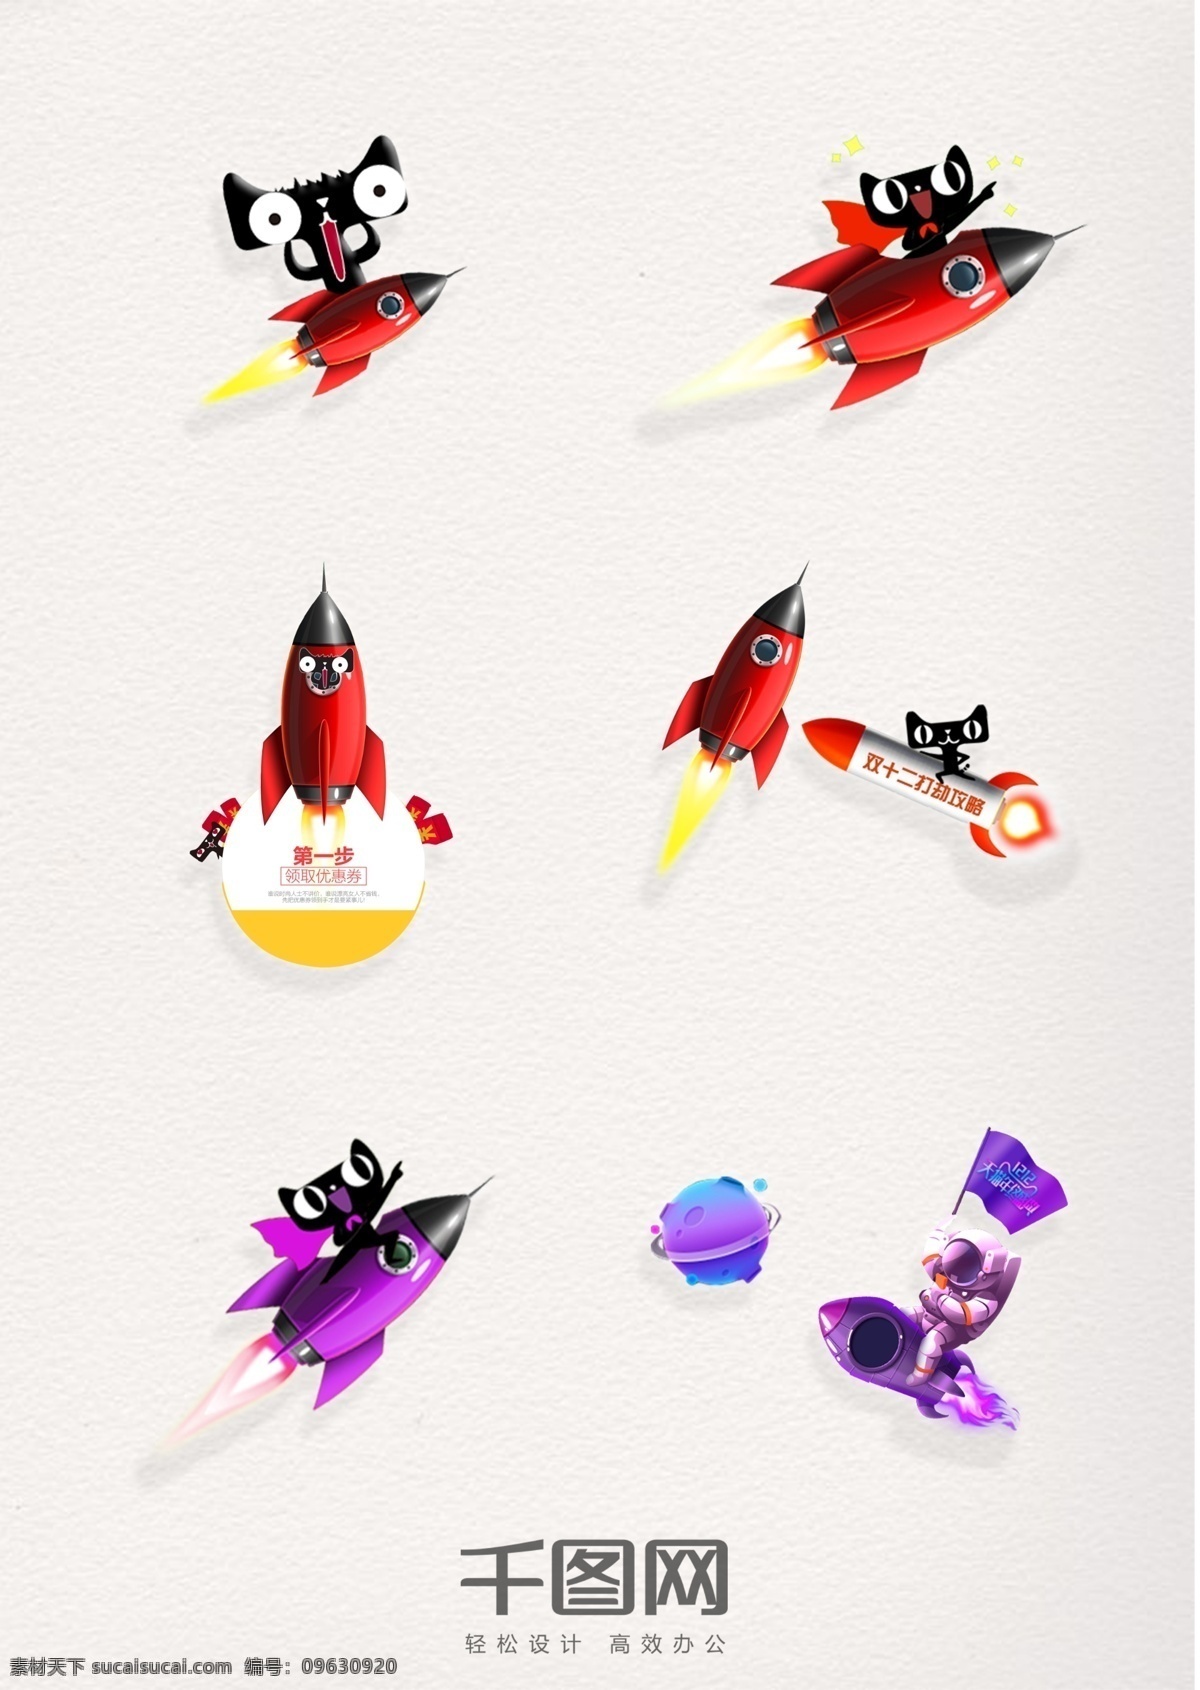 天猫 火箭 卡通 元素 图案 天猫火箭 坐火箭的猫 卡通天猫火箭 双十 二天 猫 天猫火箭元素 火箭飞行 装饰